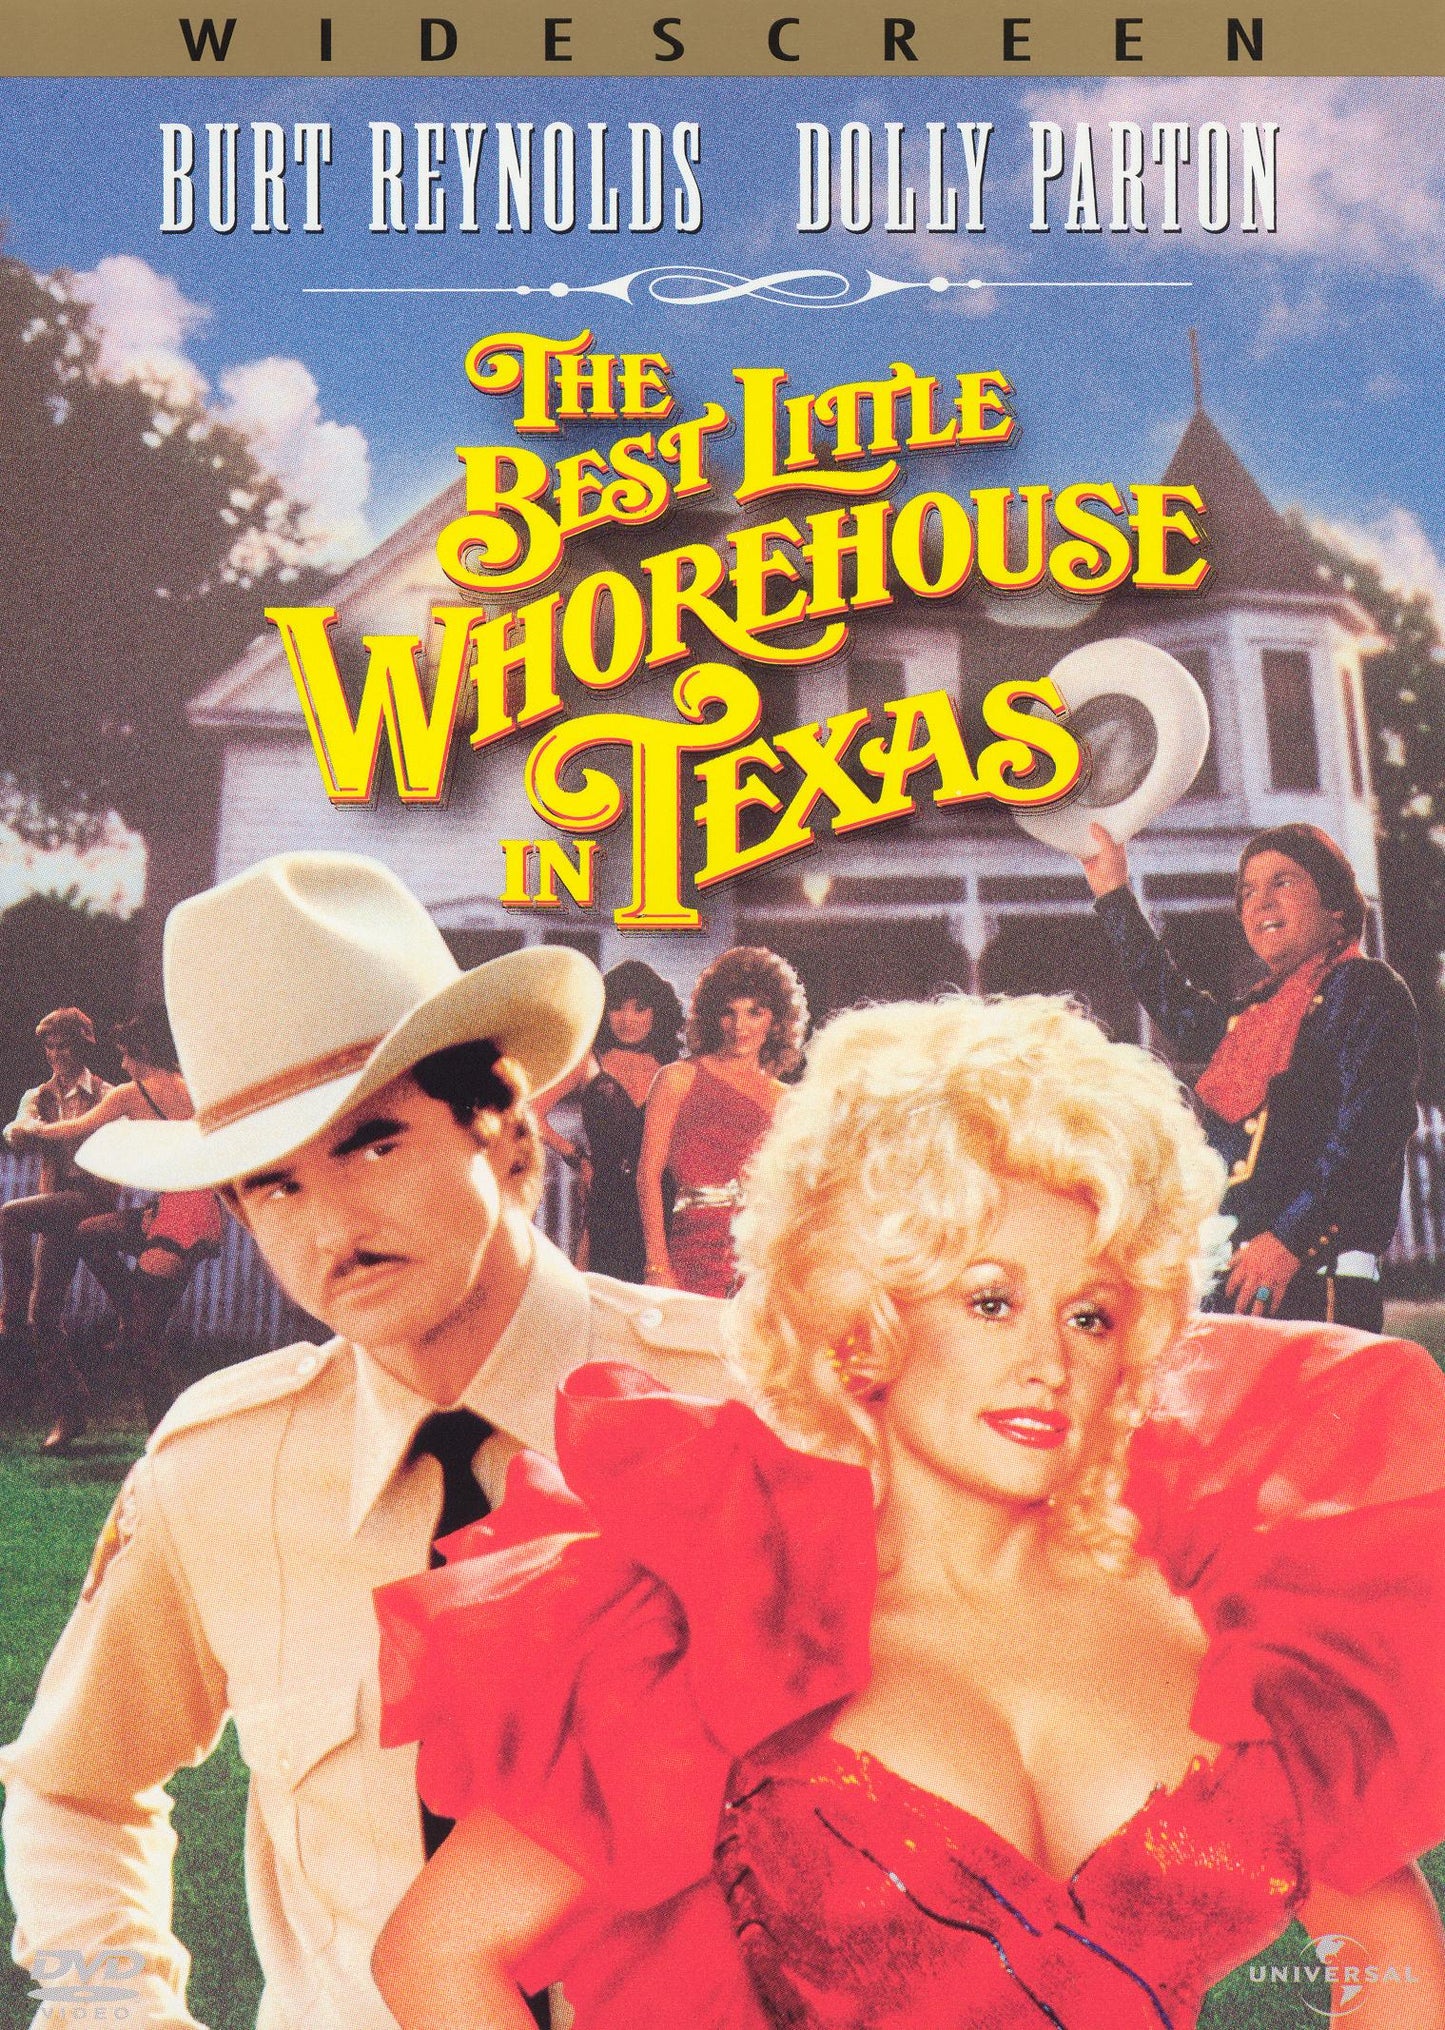 Best Little Whorehouse in Texas cover art